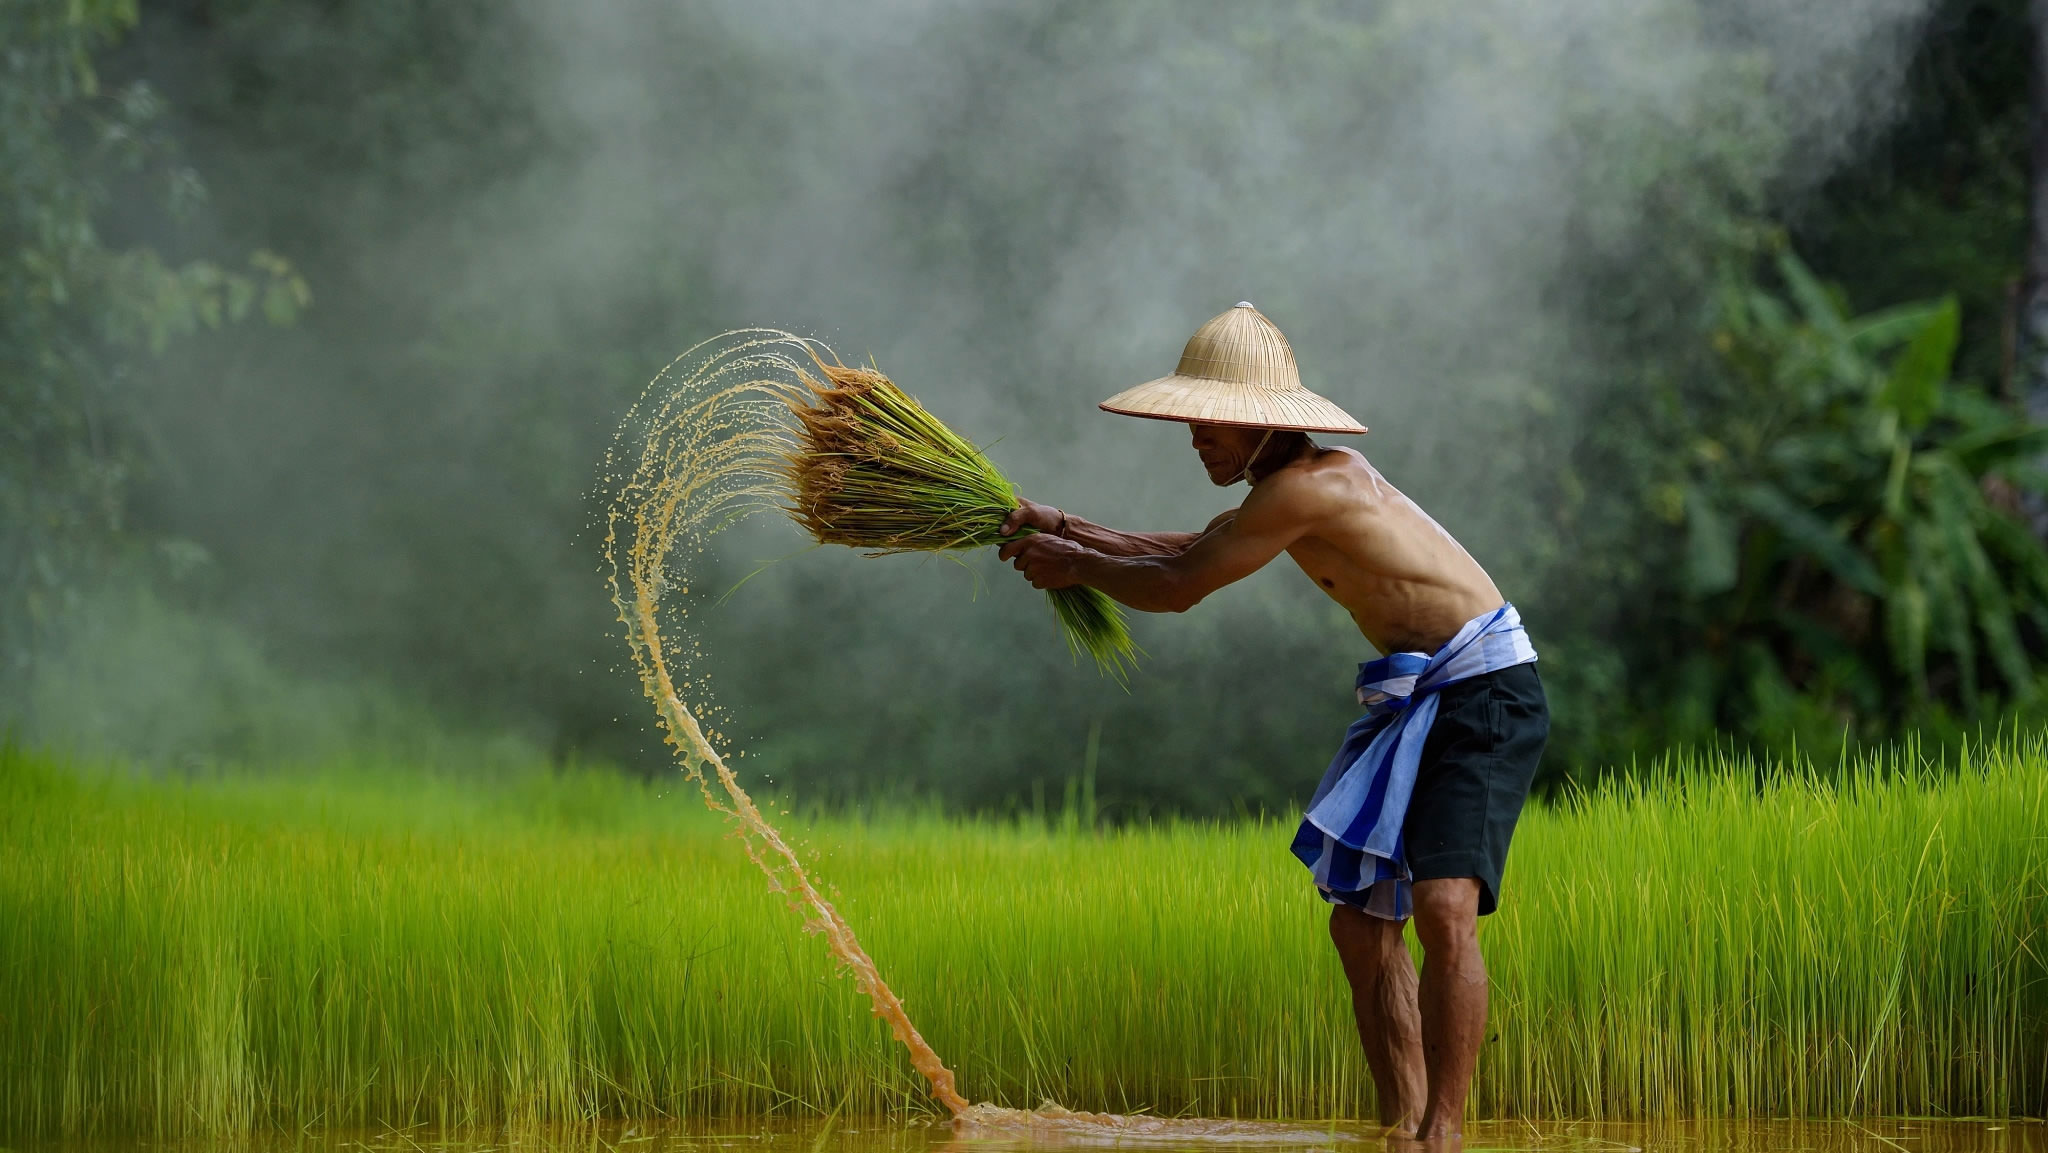 Những hình ảnh quê hương Việt Nam tuyệt đẹp  Ông đồ xứ nghệ